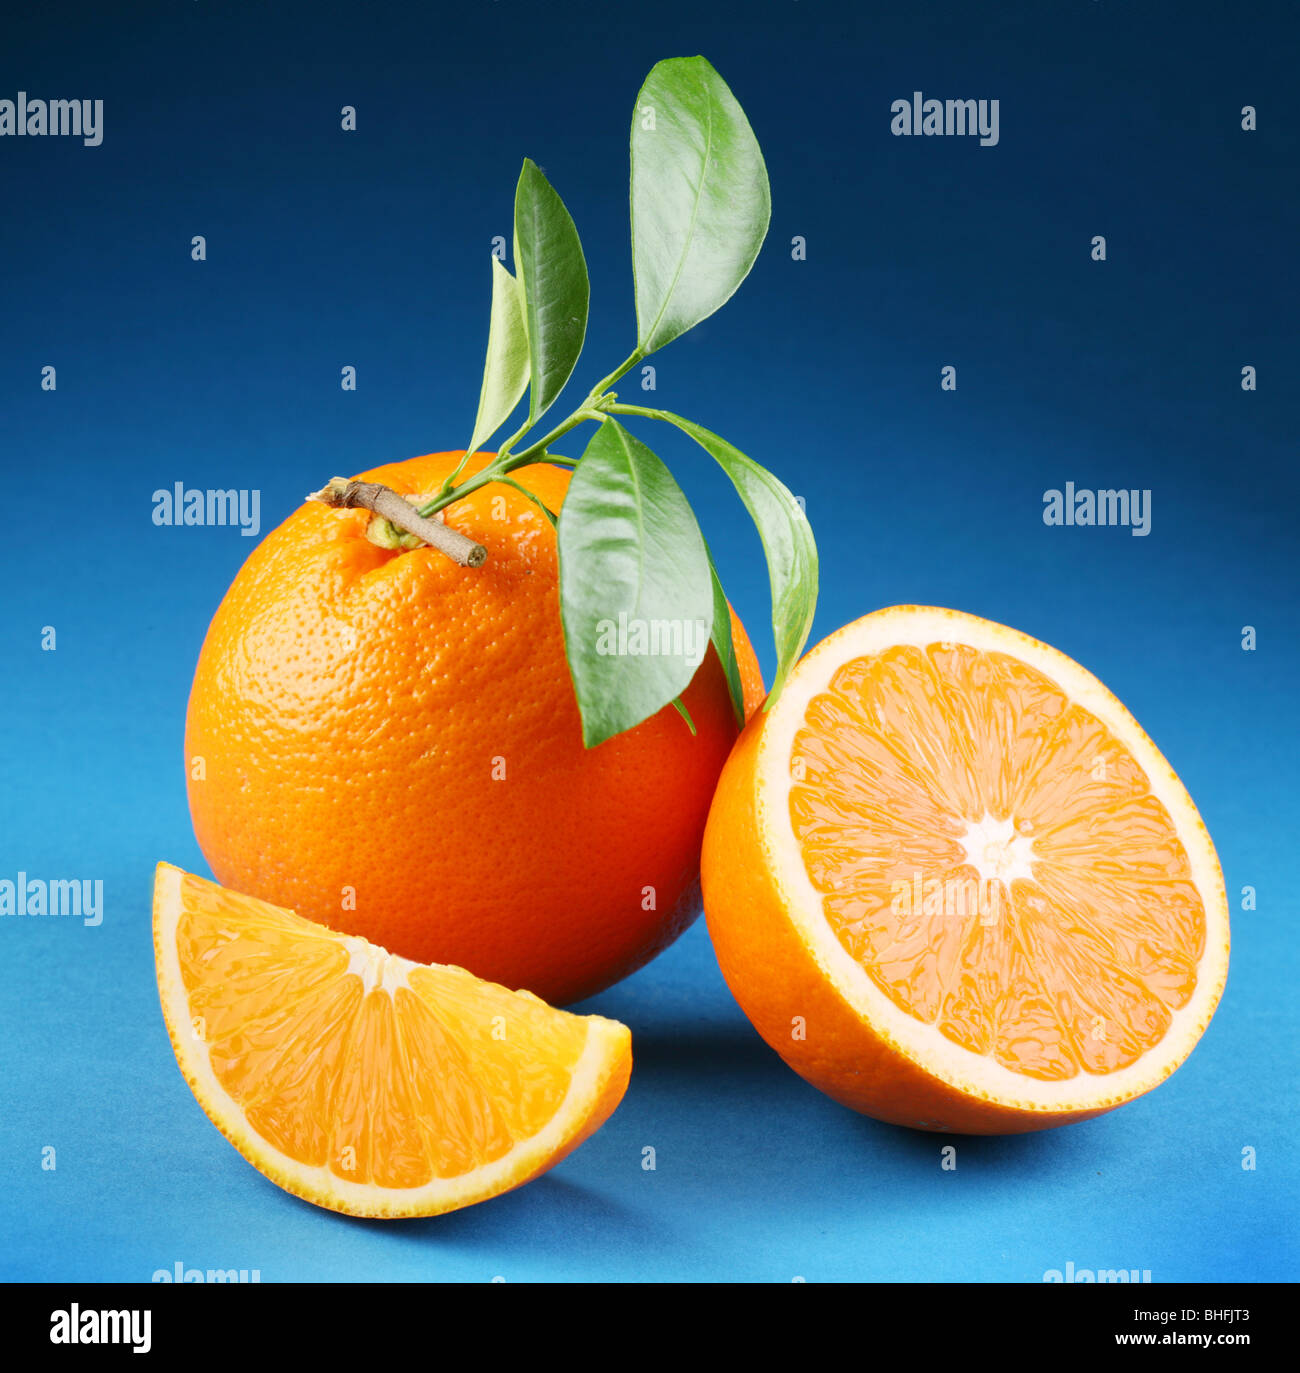 Ripe orange on a blue background Stock Photo